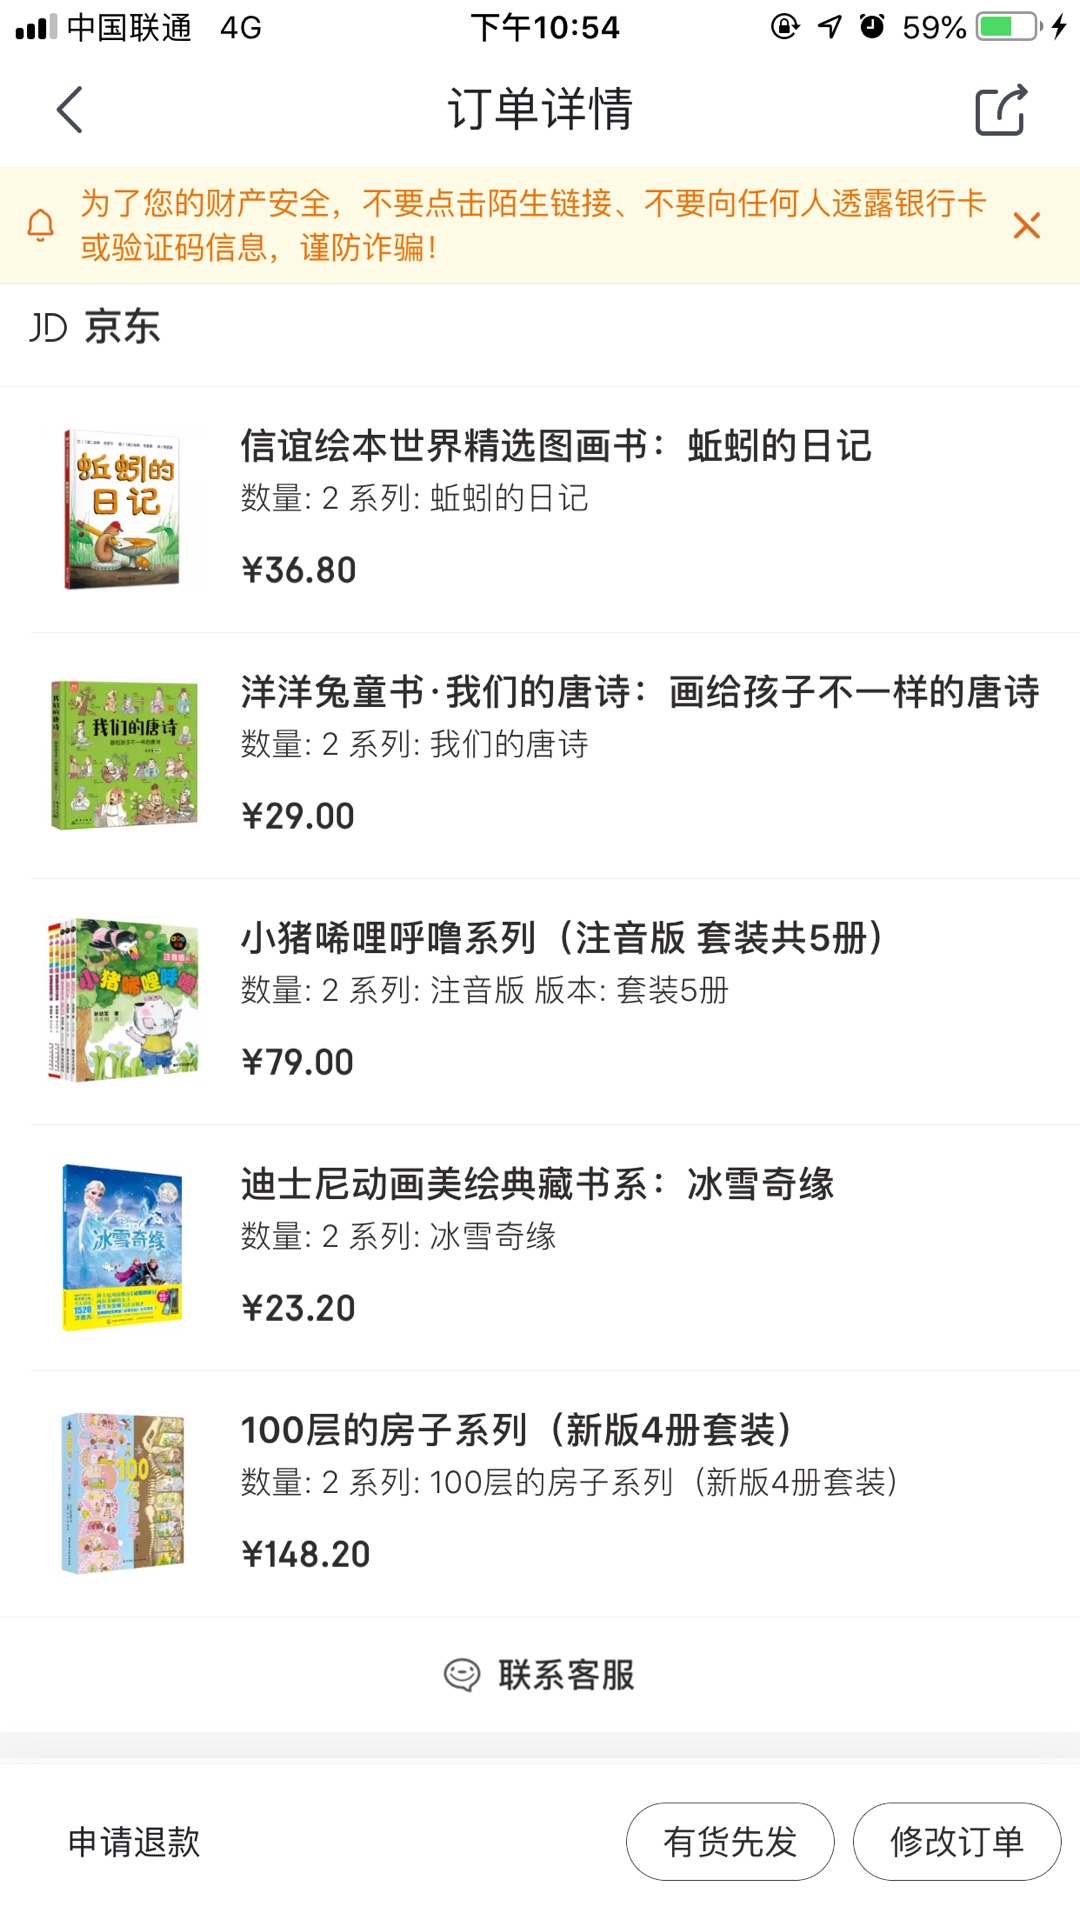 600-400，**领到手软 活动力度太大了 买了千元的书 孩子的书都是买 活动在多点吧